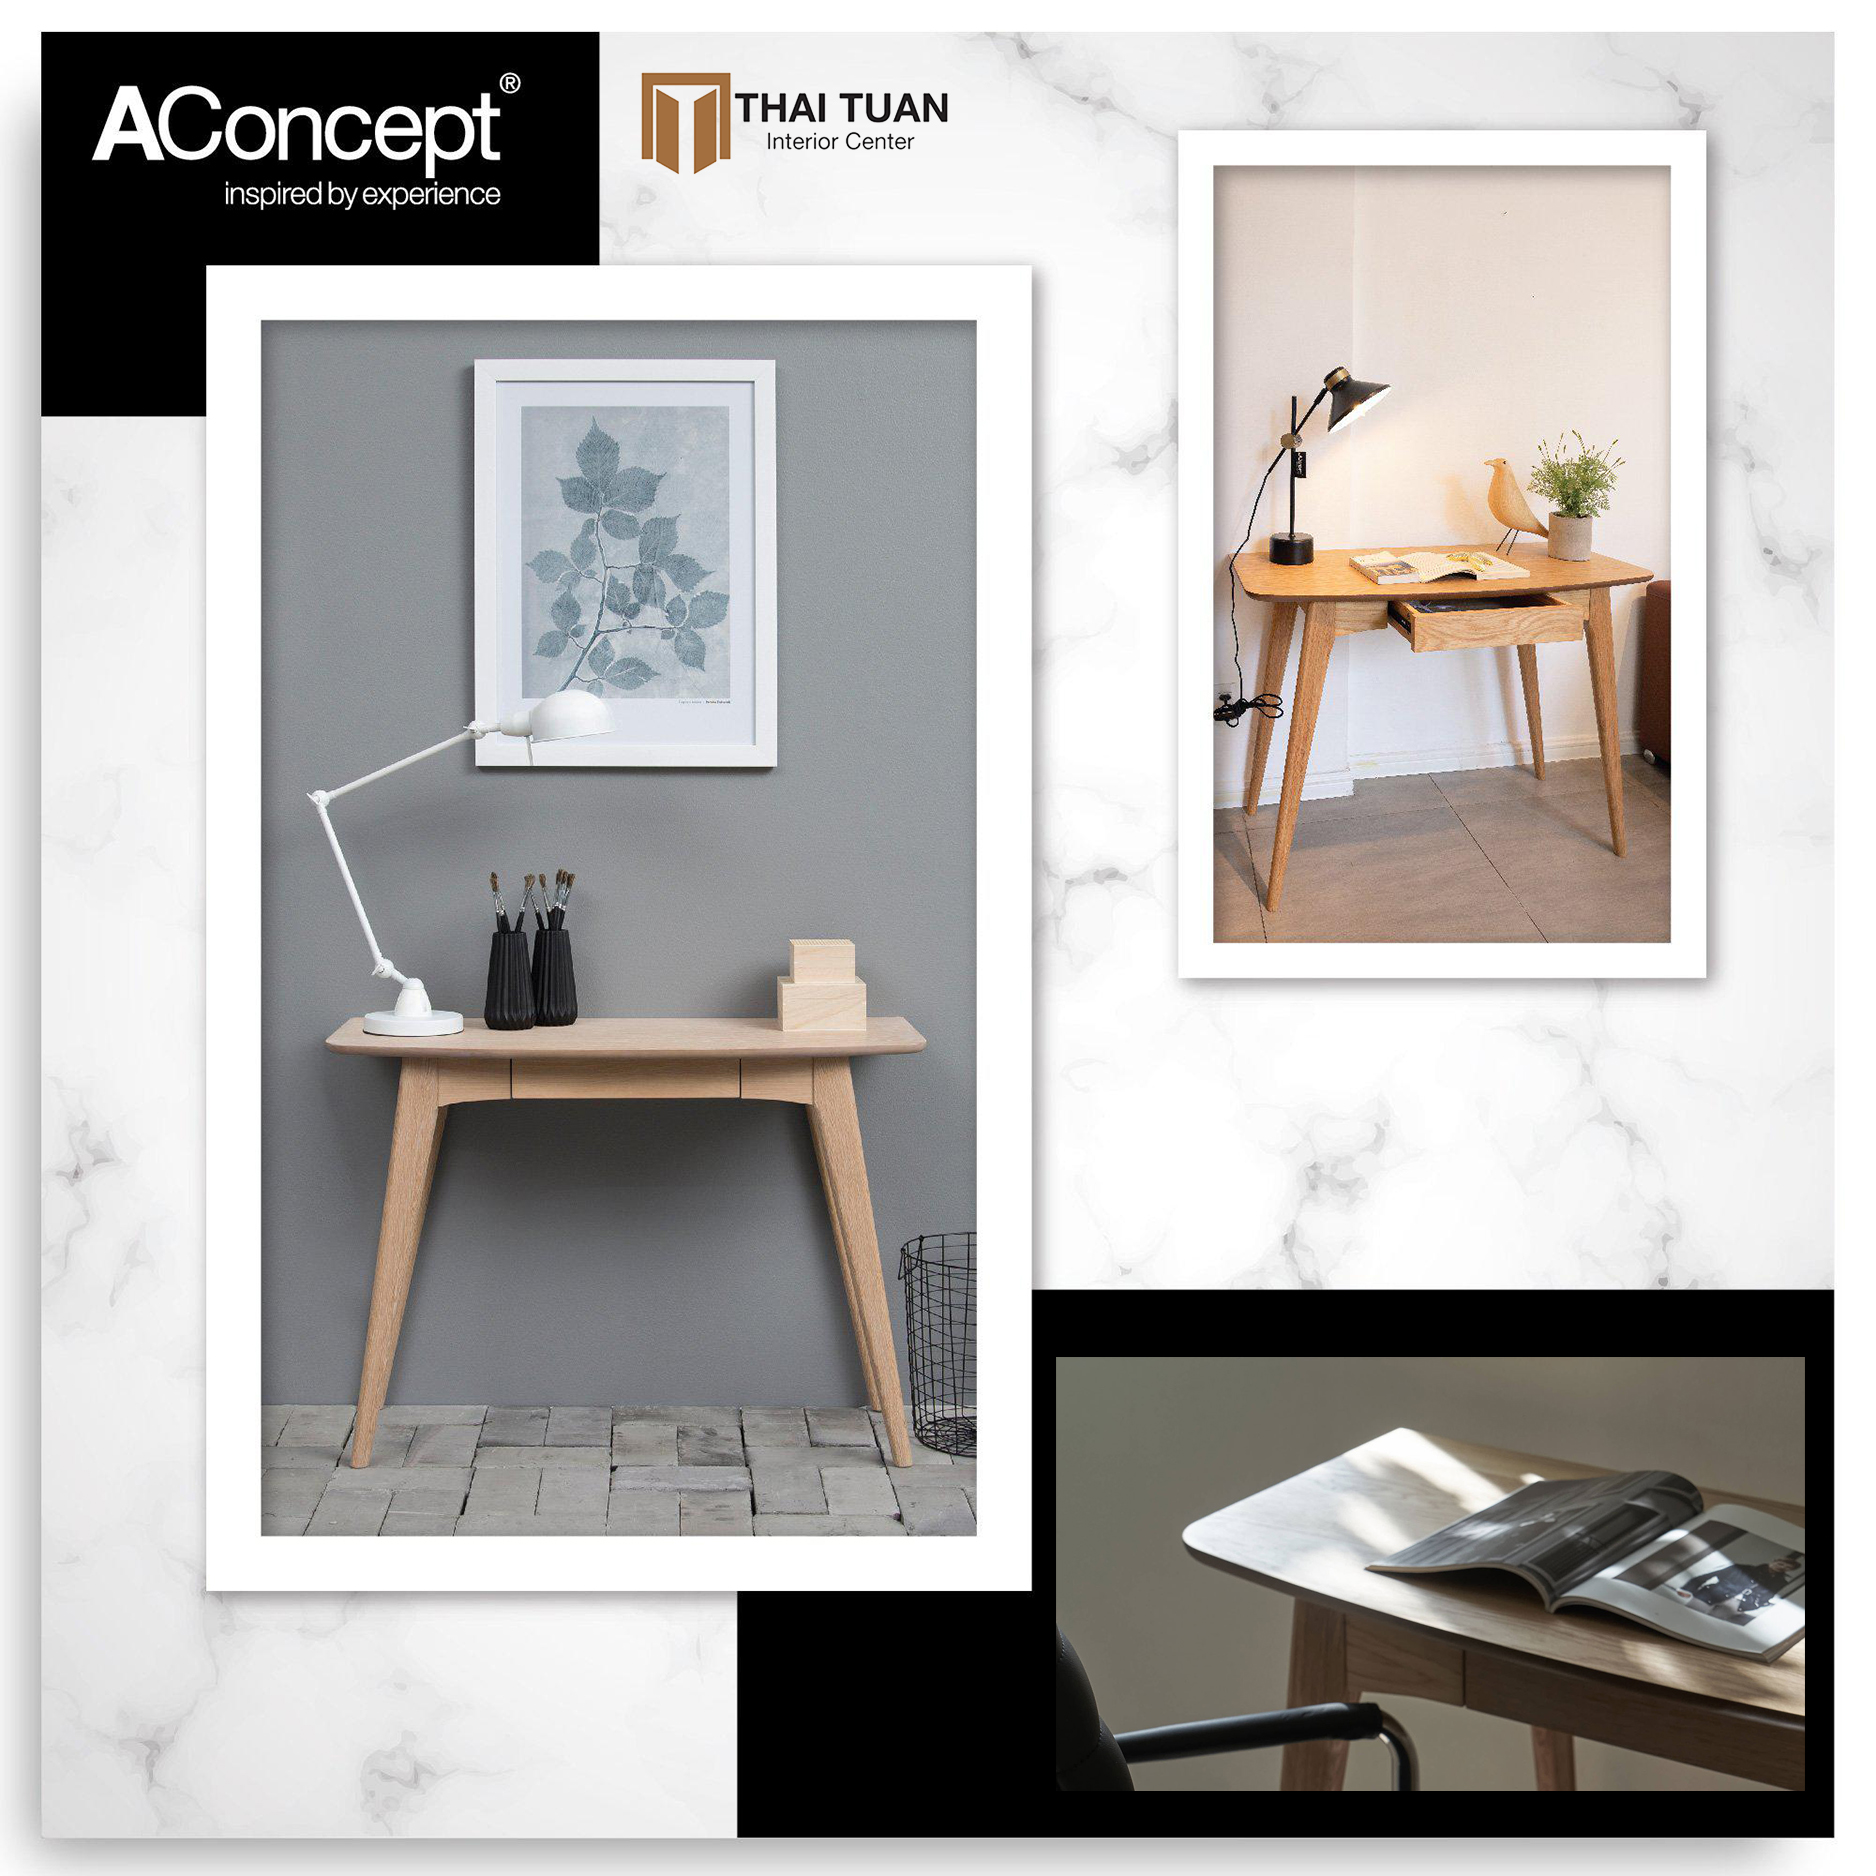 Nội thất văn phòng tiện nghi đến từ thương hiệu AConcept - nâng cấp phòng làm việc thành một không gian lí tưởng